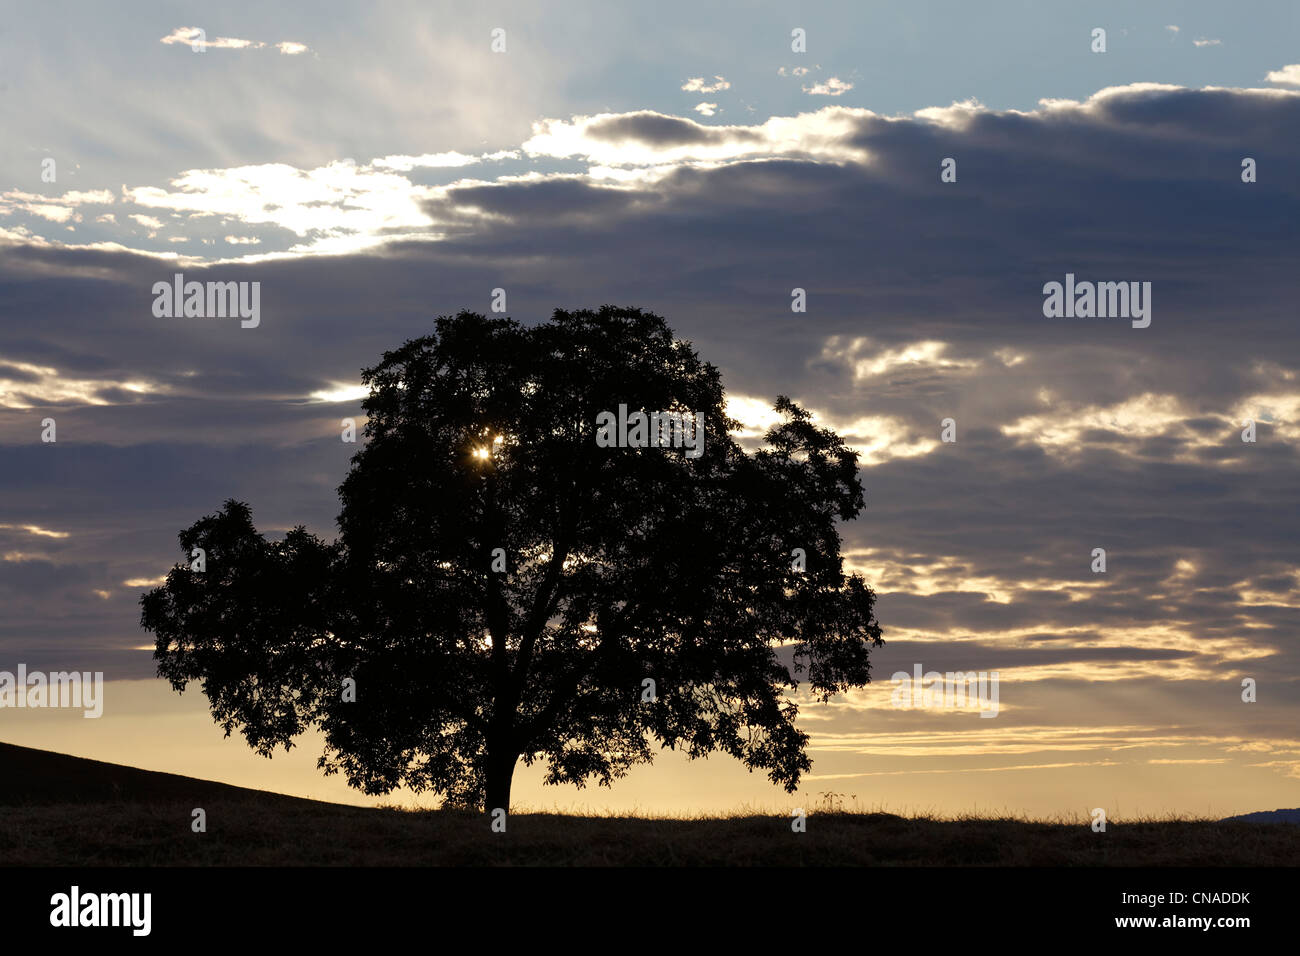 France, Puy de Dome, arbre isolé au coucher du soleil Banque D'Images